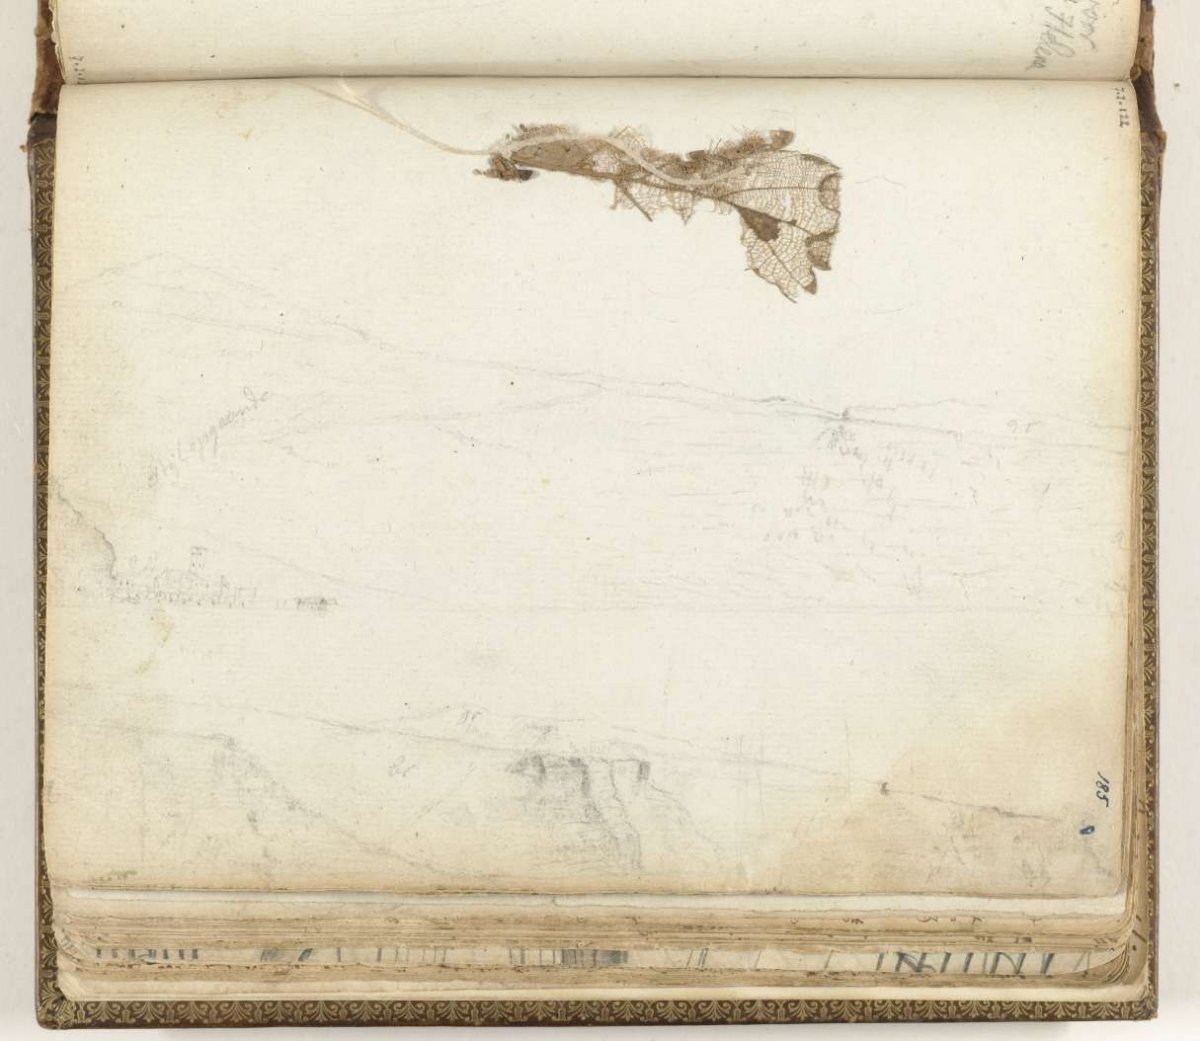 Baai Sint-Helena, gedroogd blad, Jan Brandes, 1787